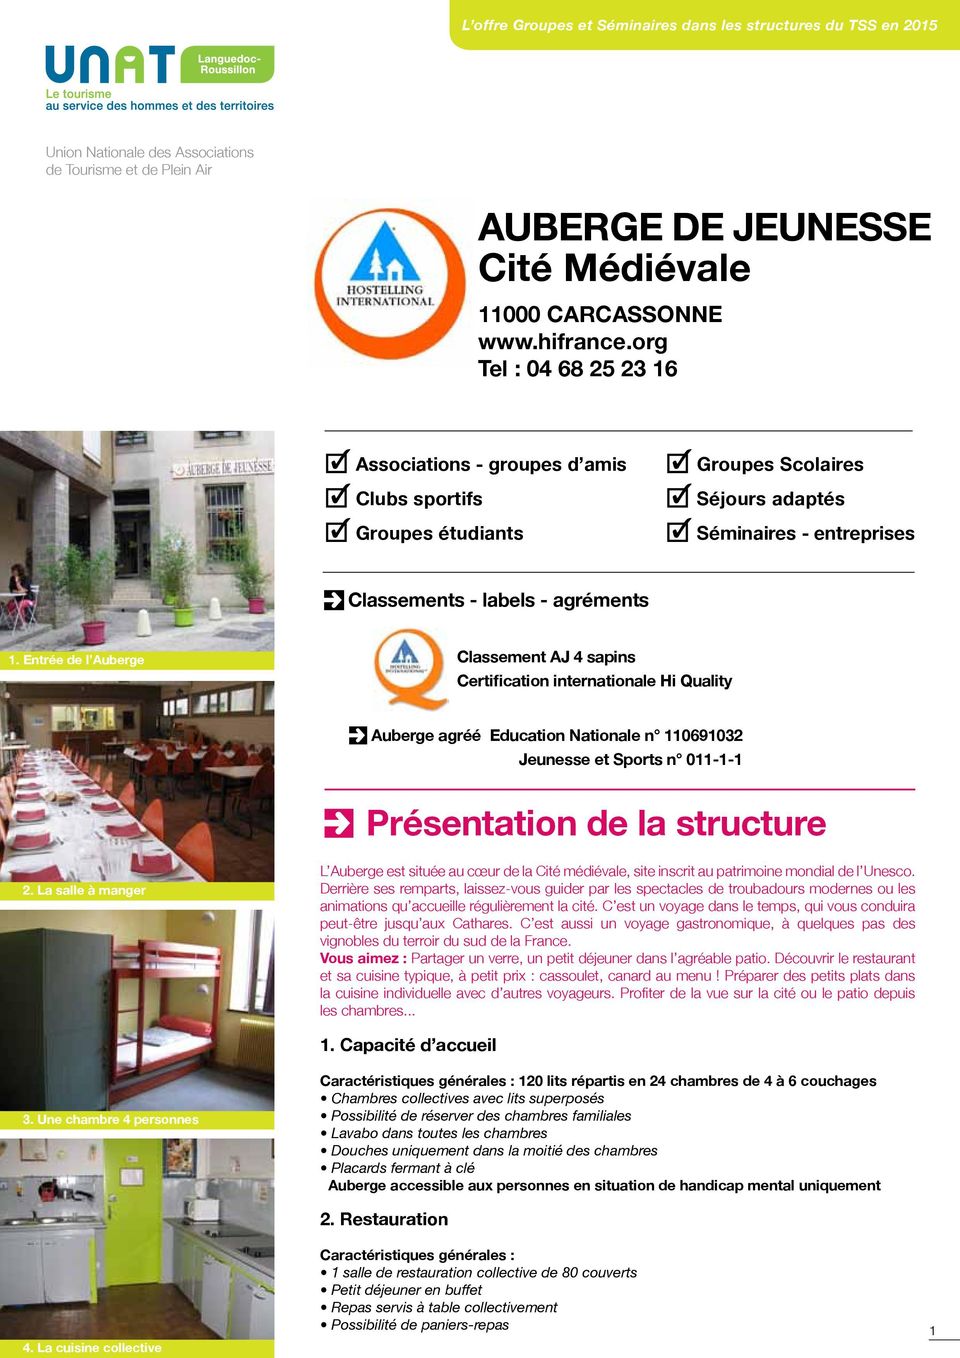 Entrée de l Auberge Classement AJ 4 sapins Certification internationale Hi Quality Auberge agréé Education Nationale n 110691032 Jeunesse et Sports n 011-1-1 Présentation de la structure 2.